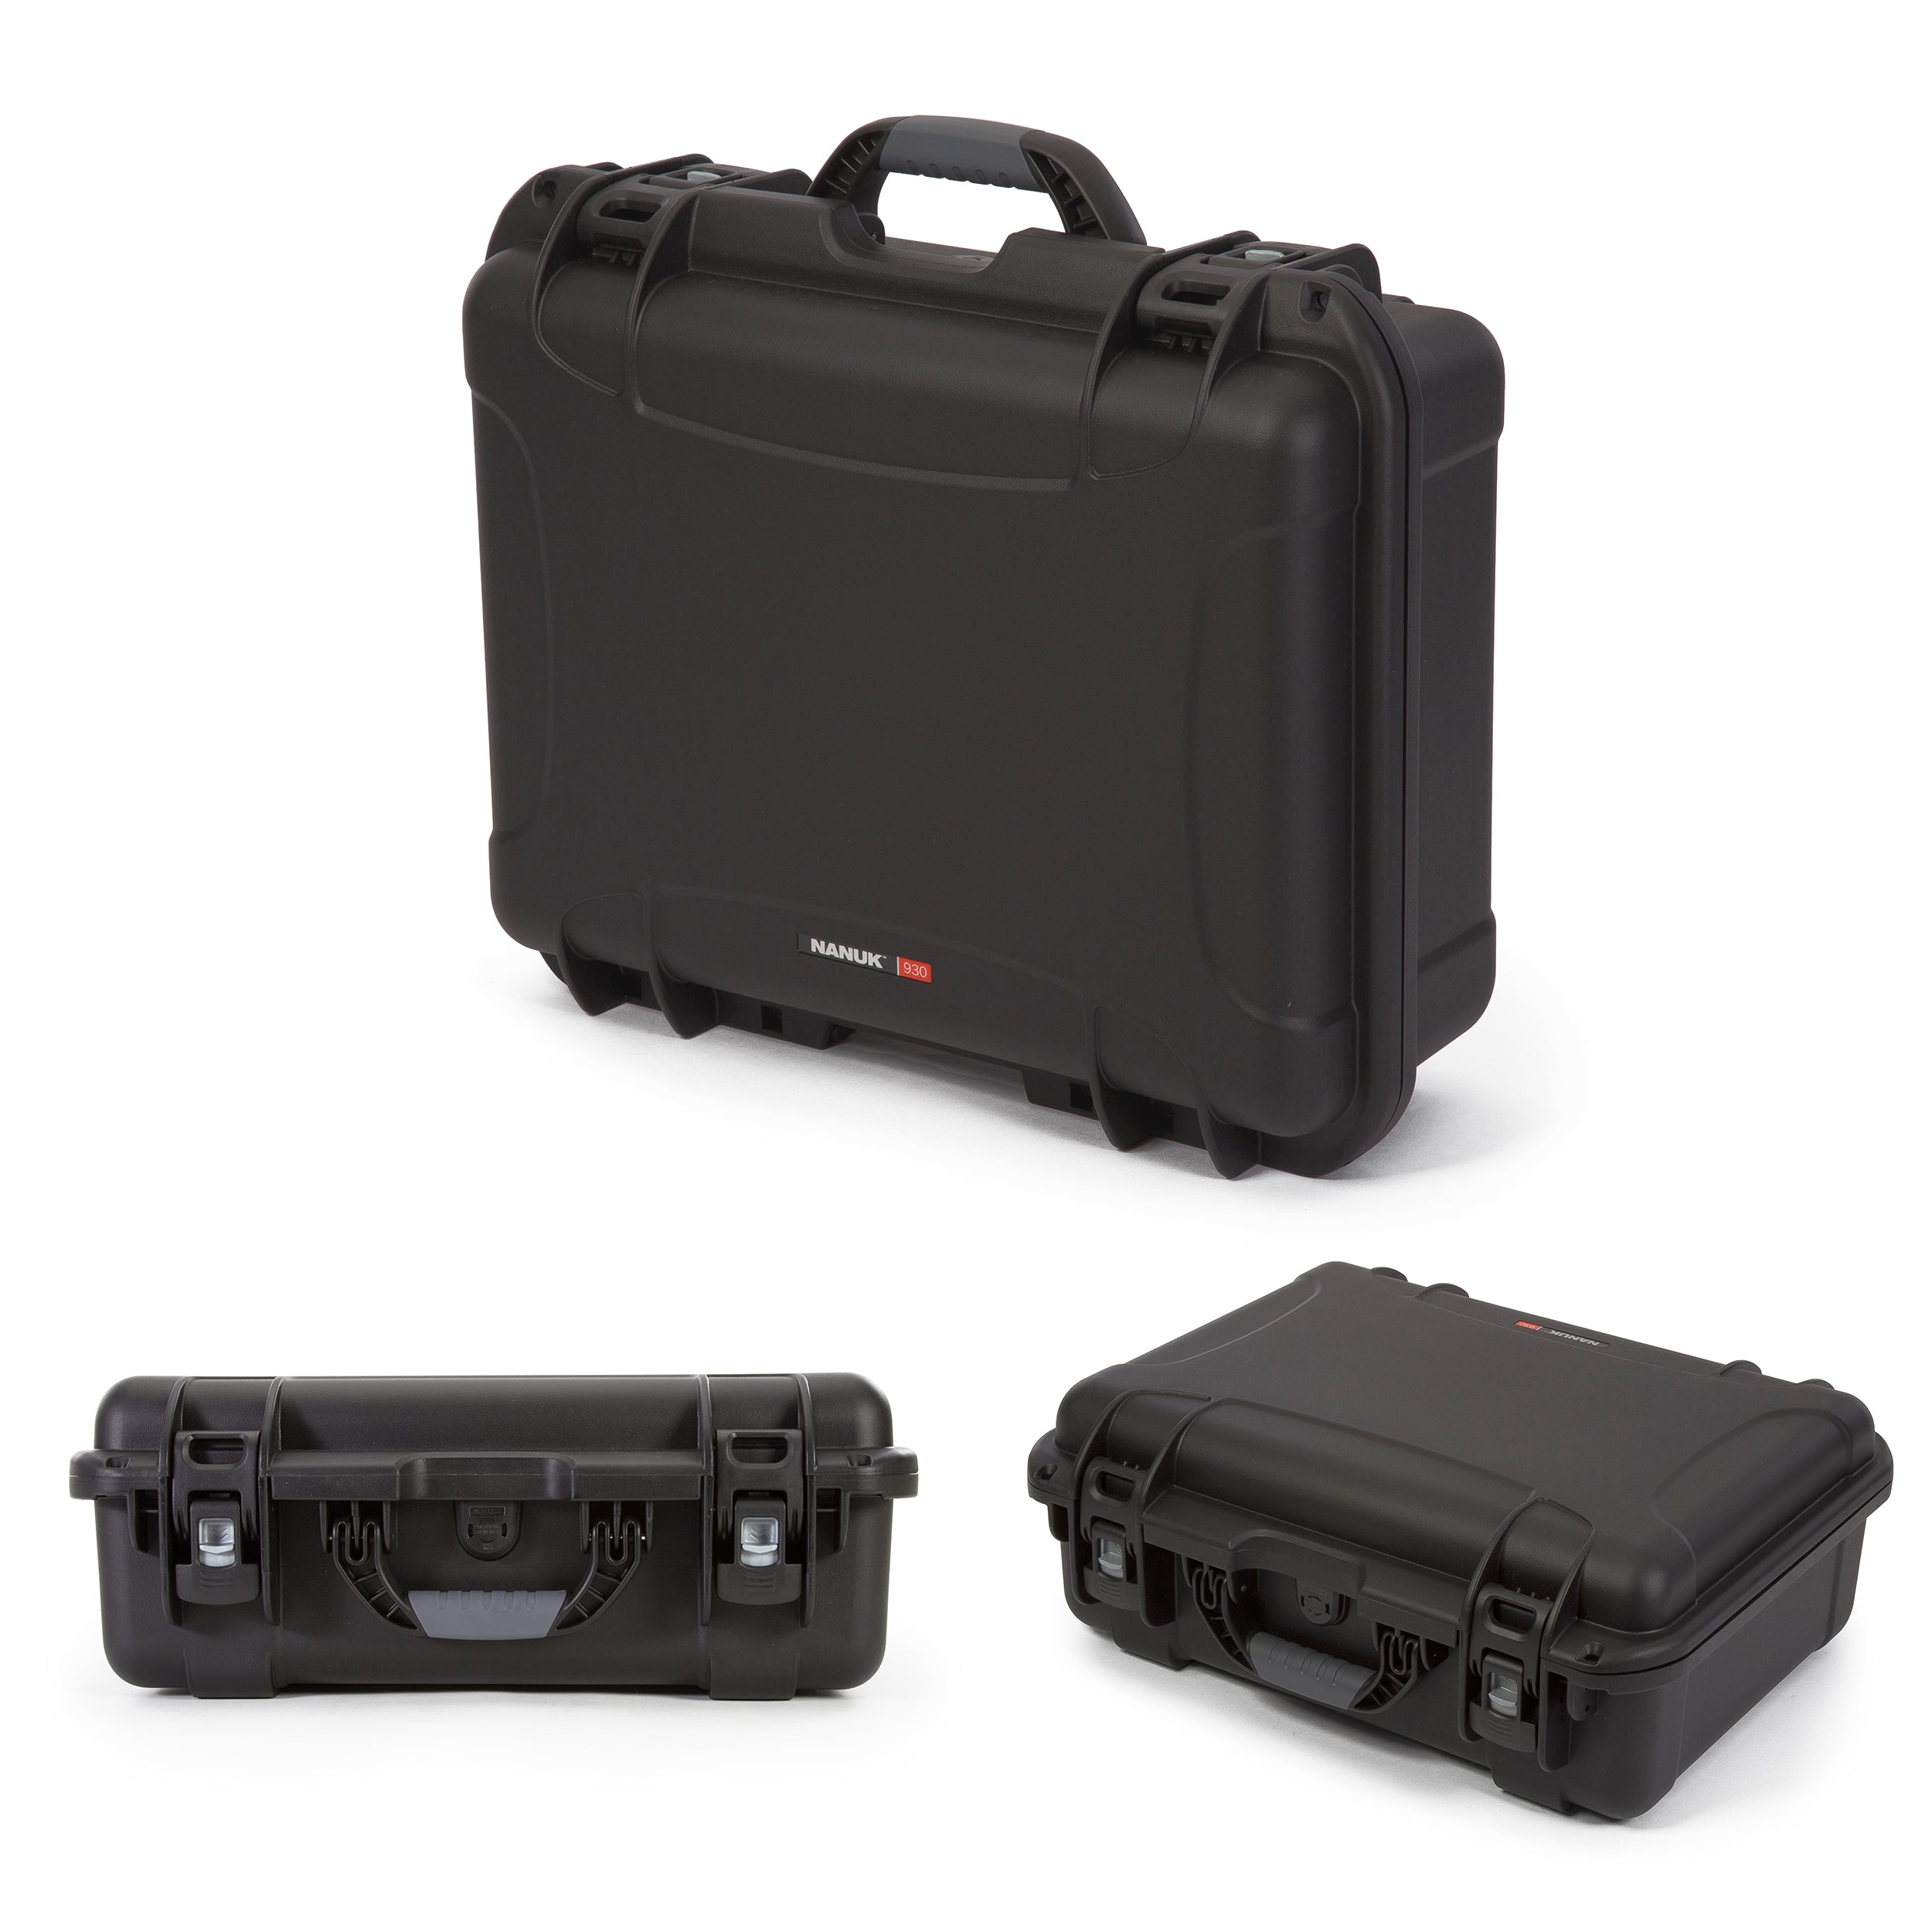 Nanuk 930 Waterproof Hard Case with Custom Foam Insert for DJI TB50 and TB55 Intelligent Flight Batteries w/ Accessories - Black